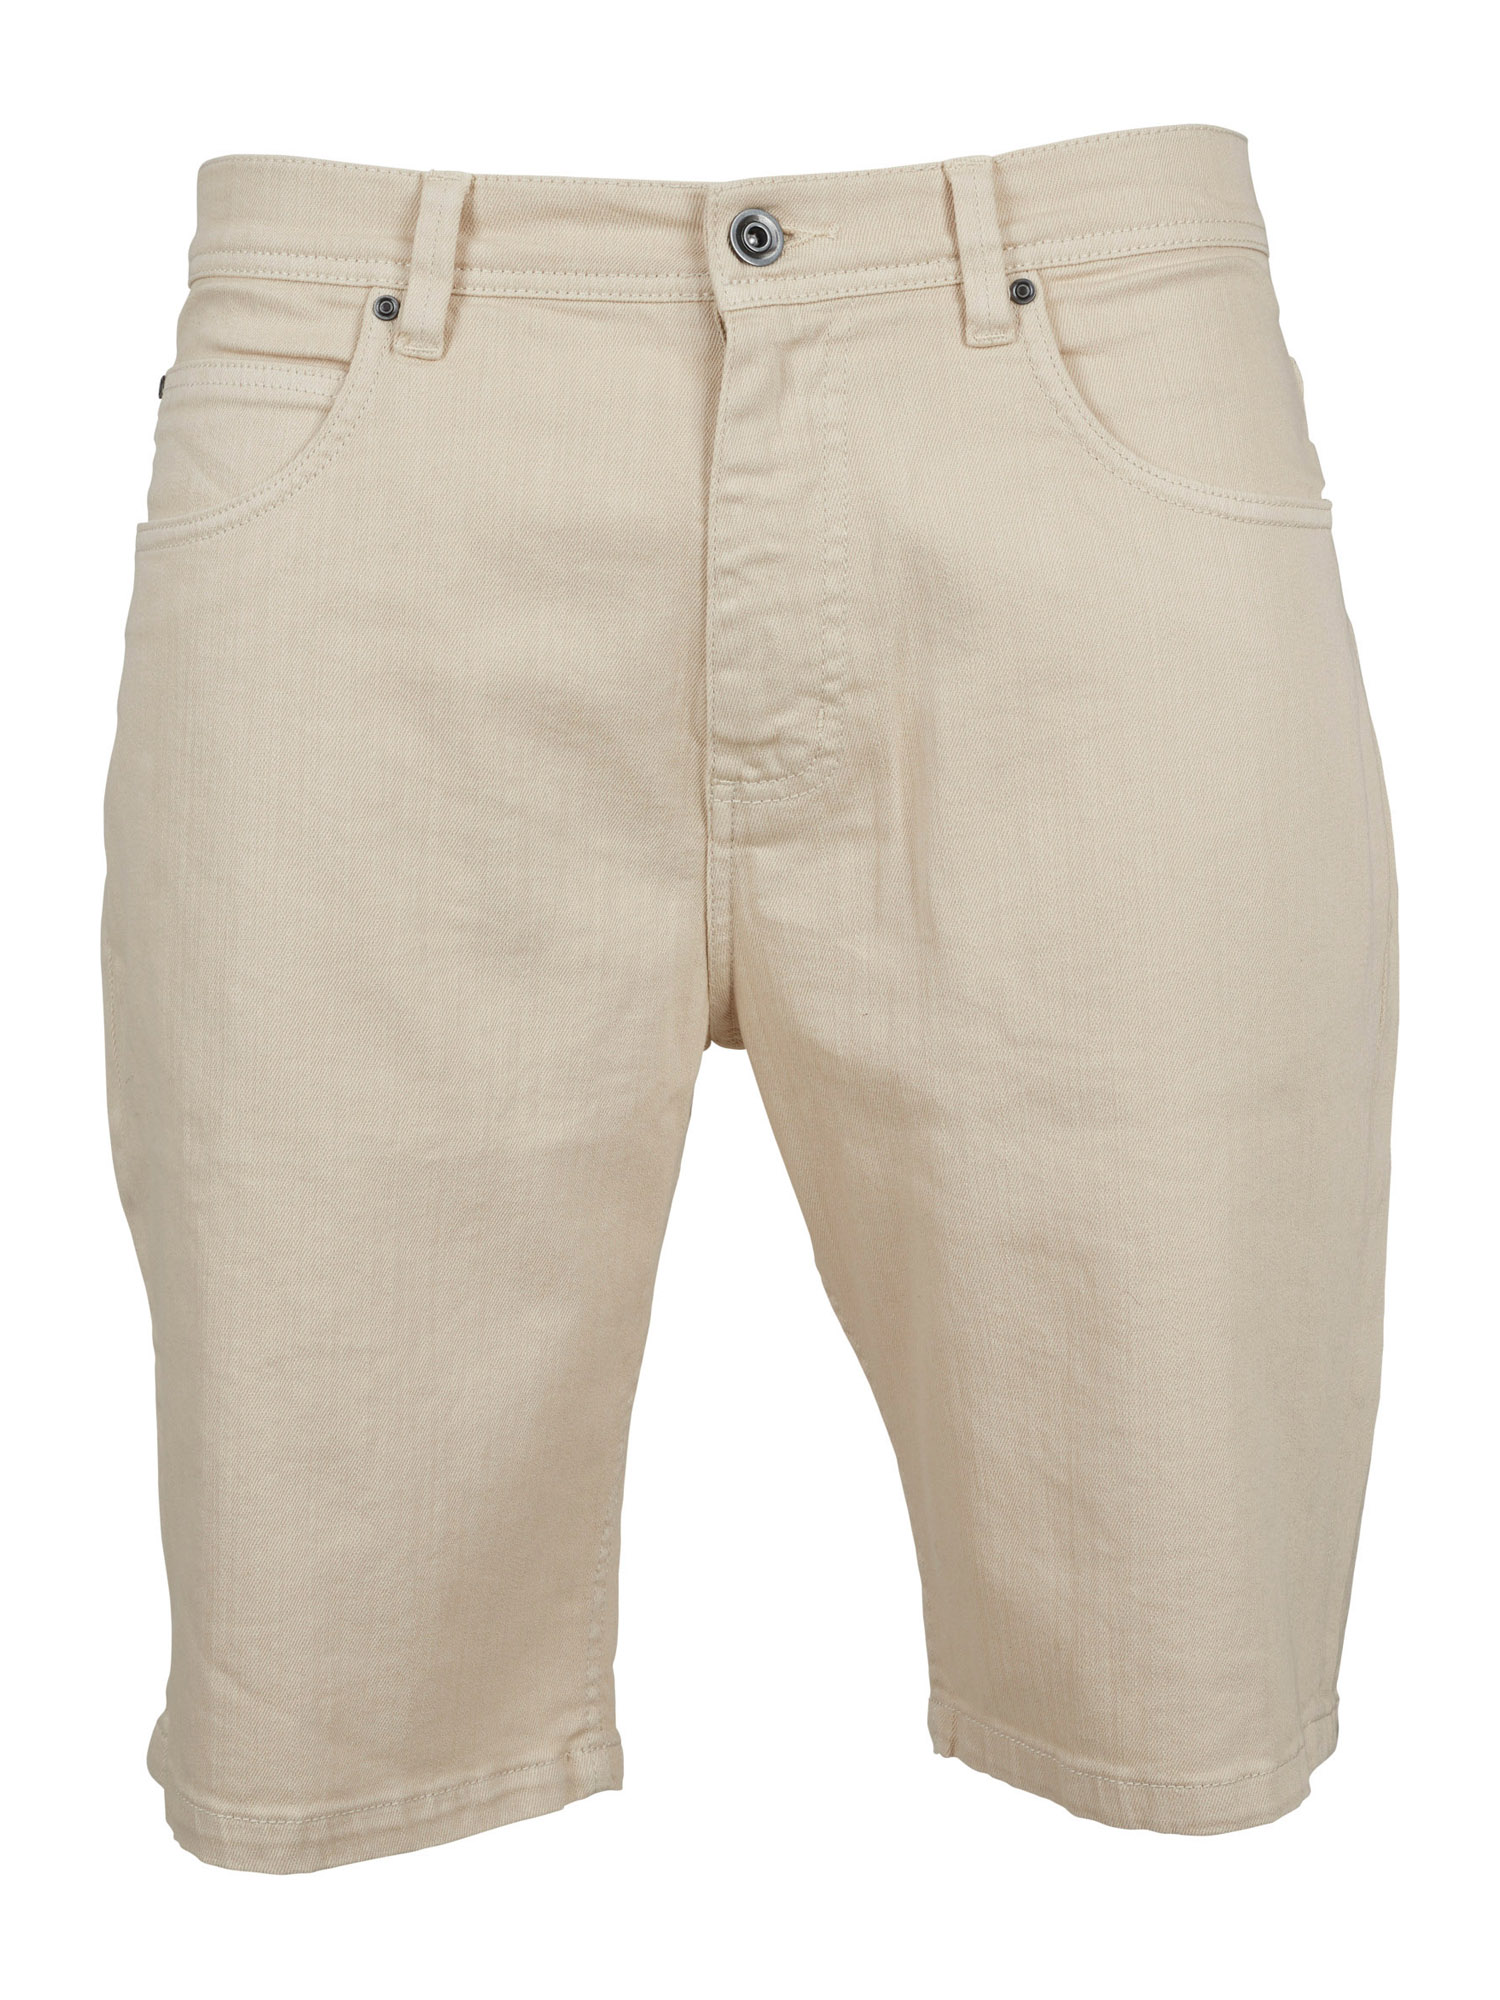 Abbigliamento Uomo Urban Classics Pantaloni in Sabbia 